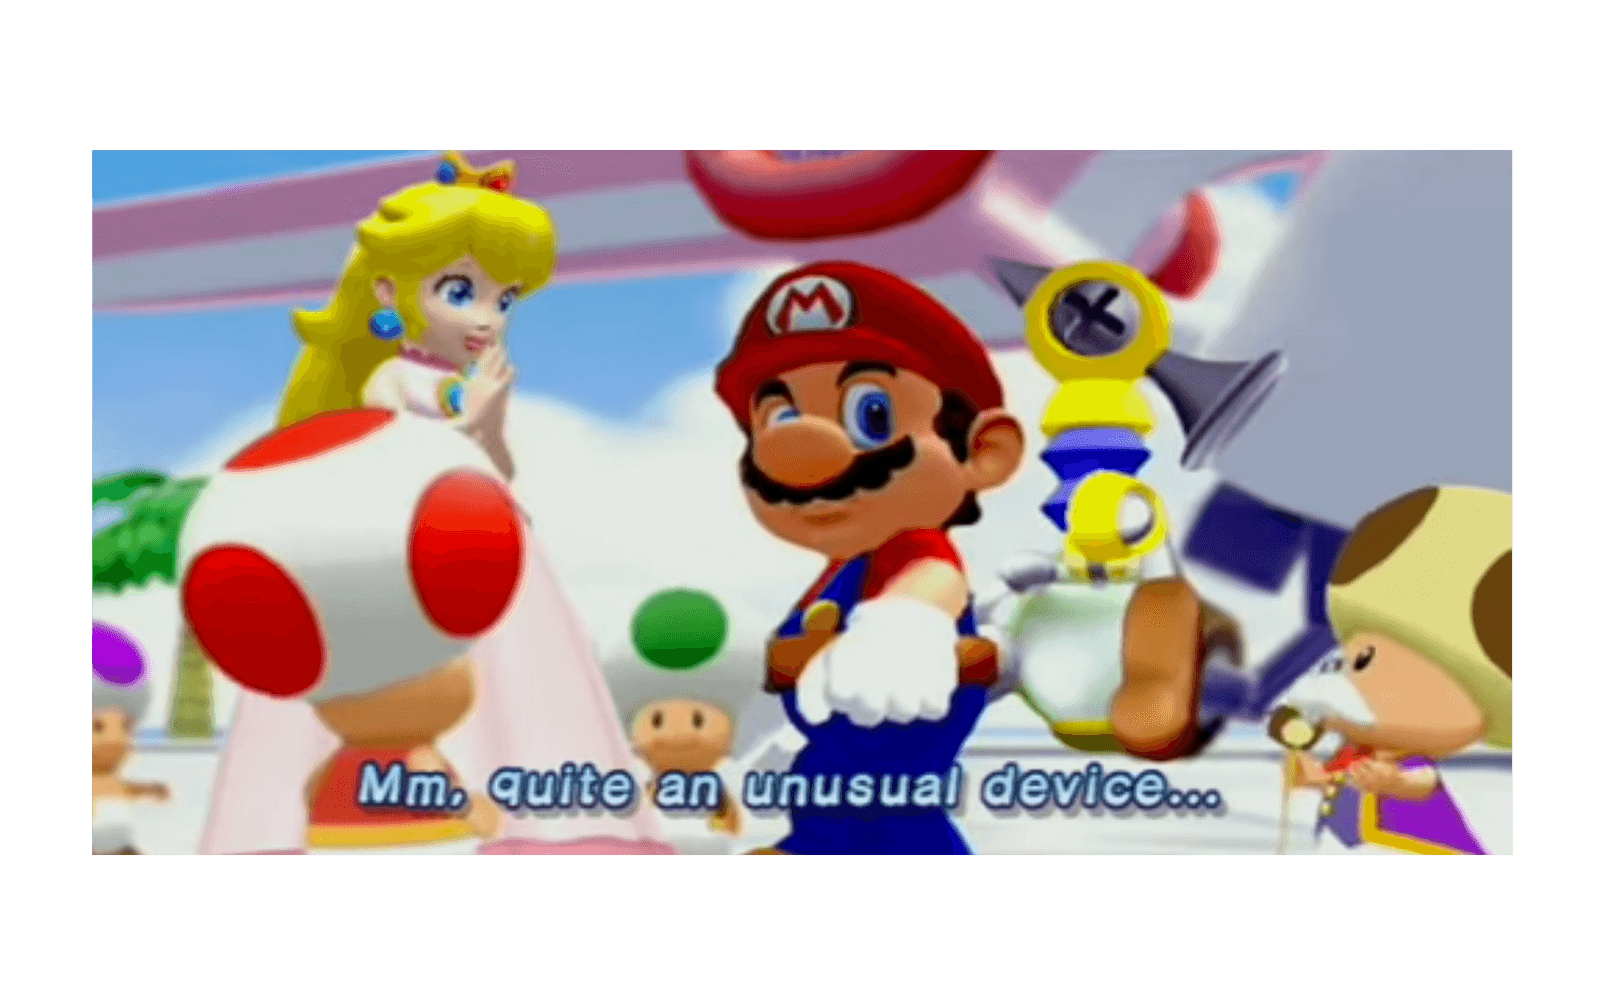 Super Mario Sunshine släpptes för GameCube 2002 och gav spelfigurerna egna röster.